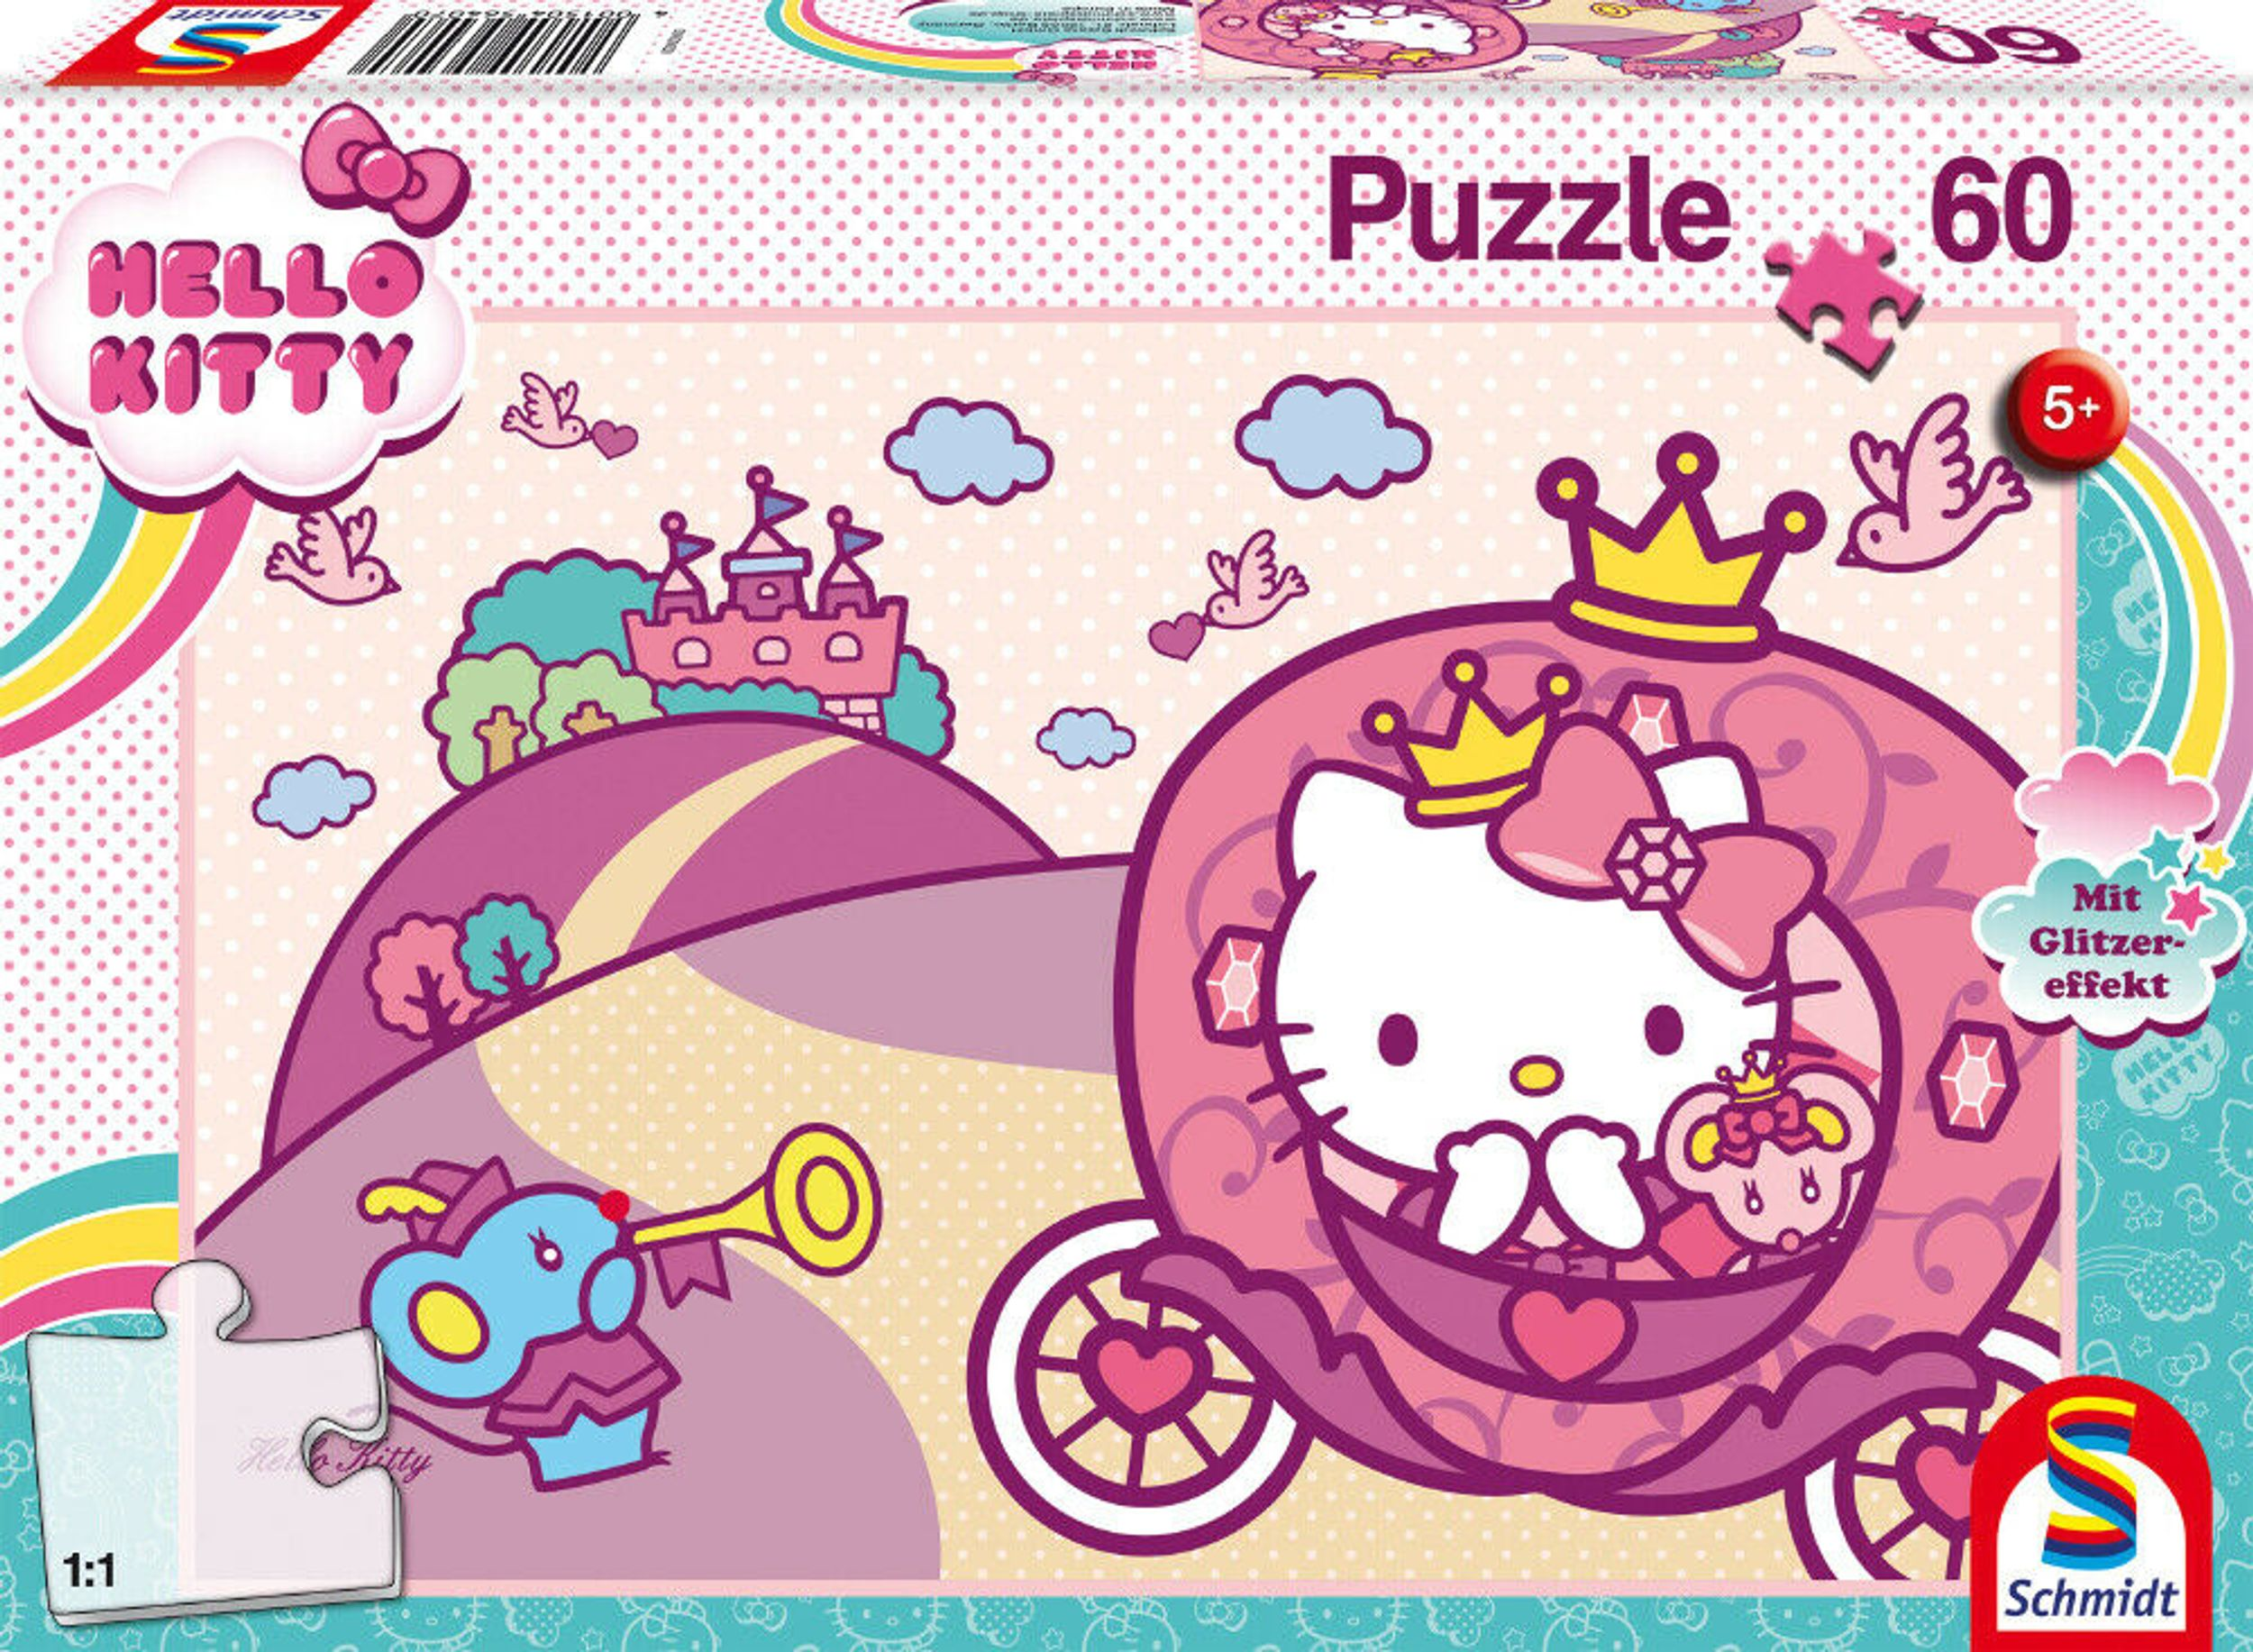 Prinzessin SPIELE Kitty Puzzle SCHMIDT